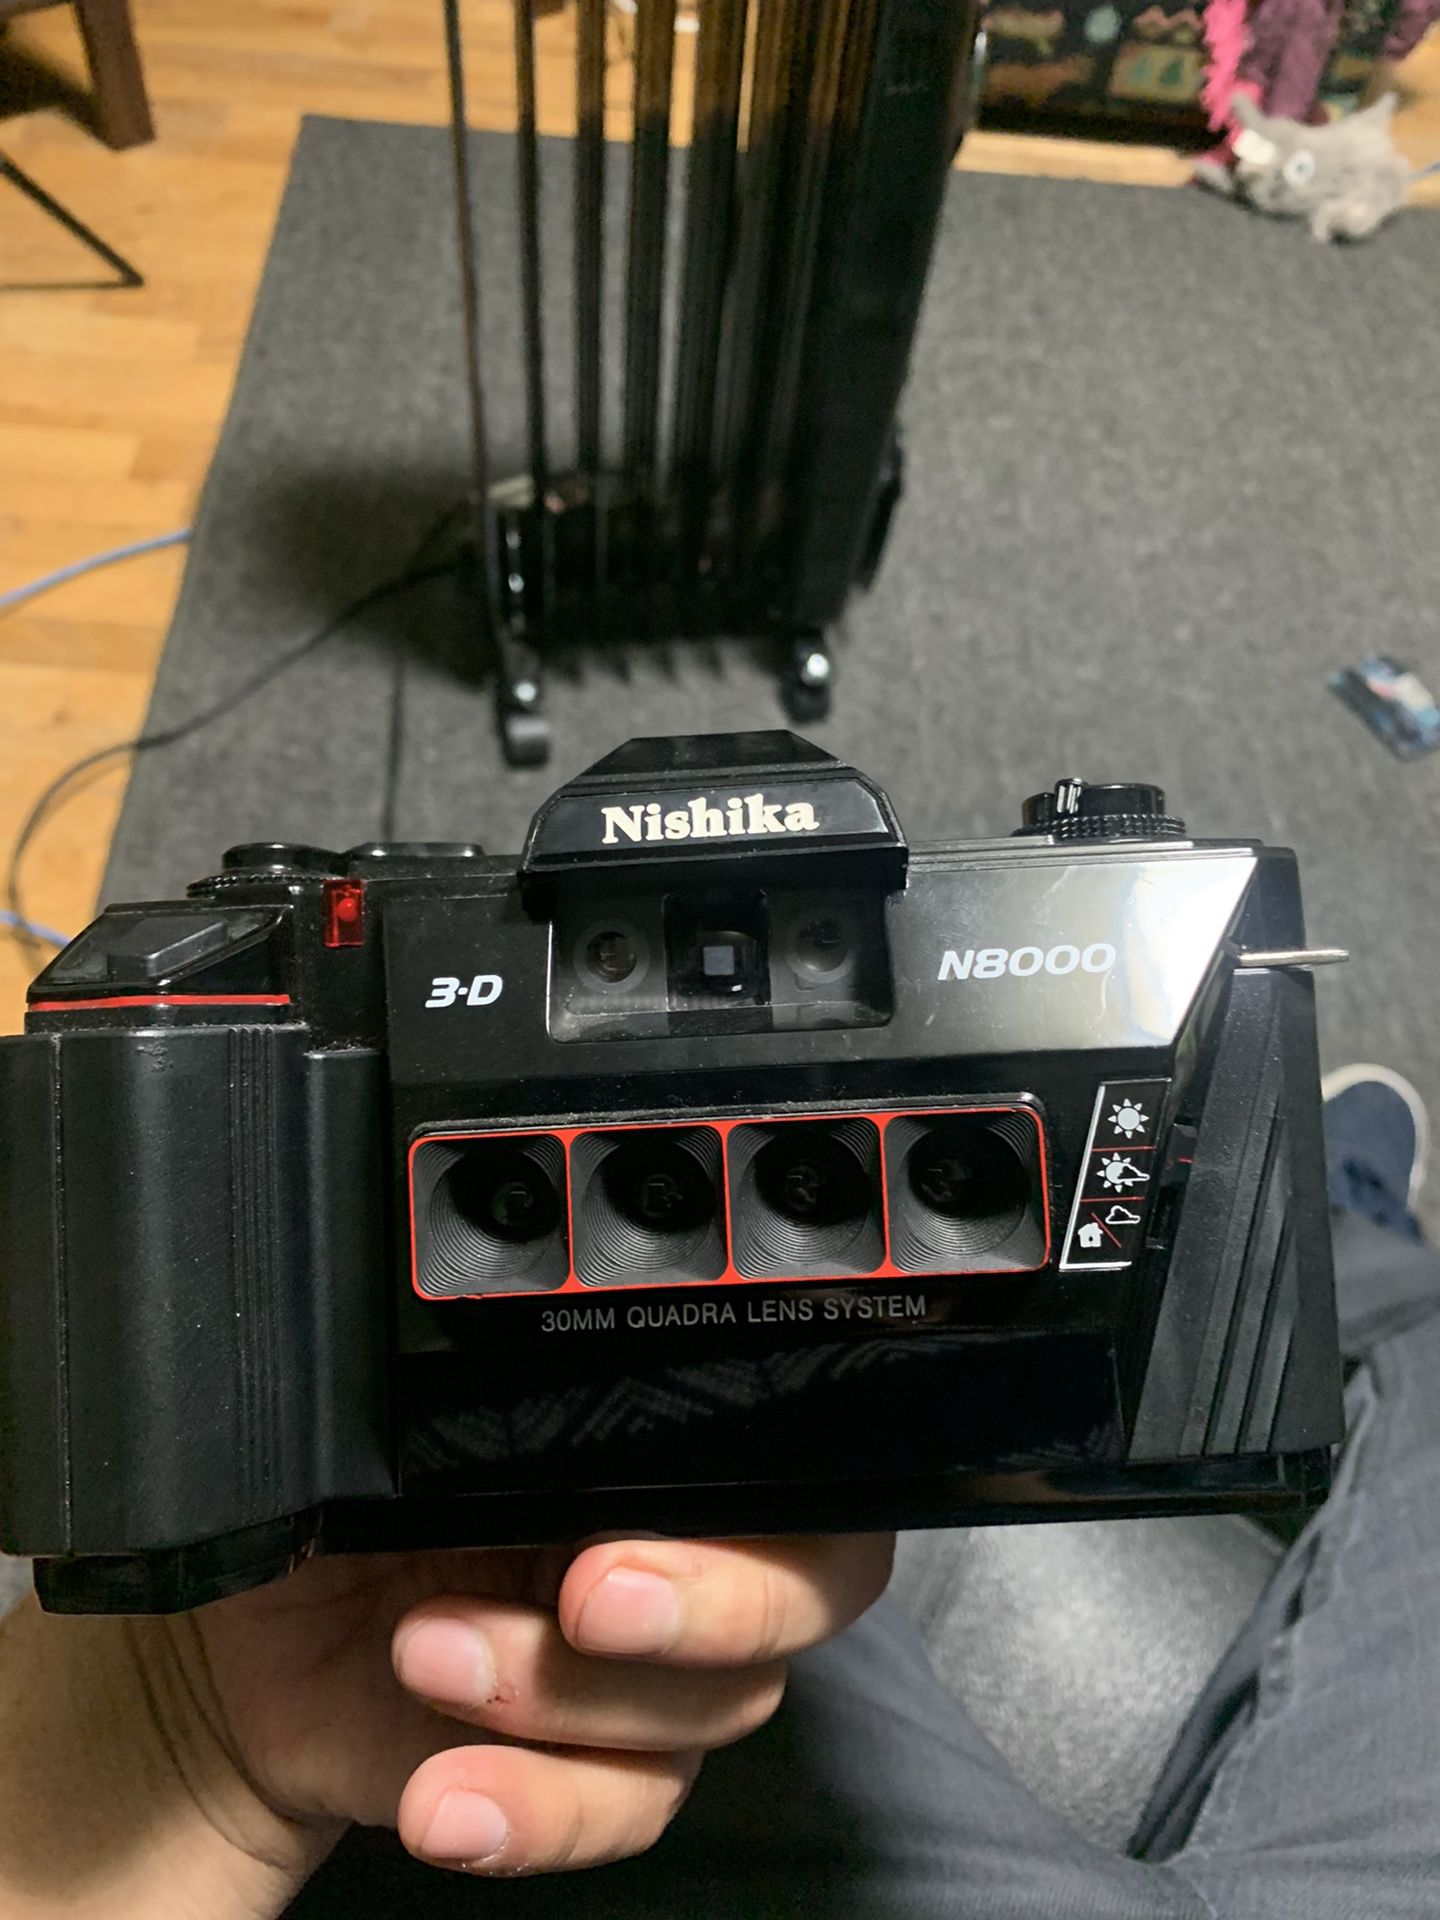 Nishika n8000 3D film camera